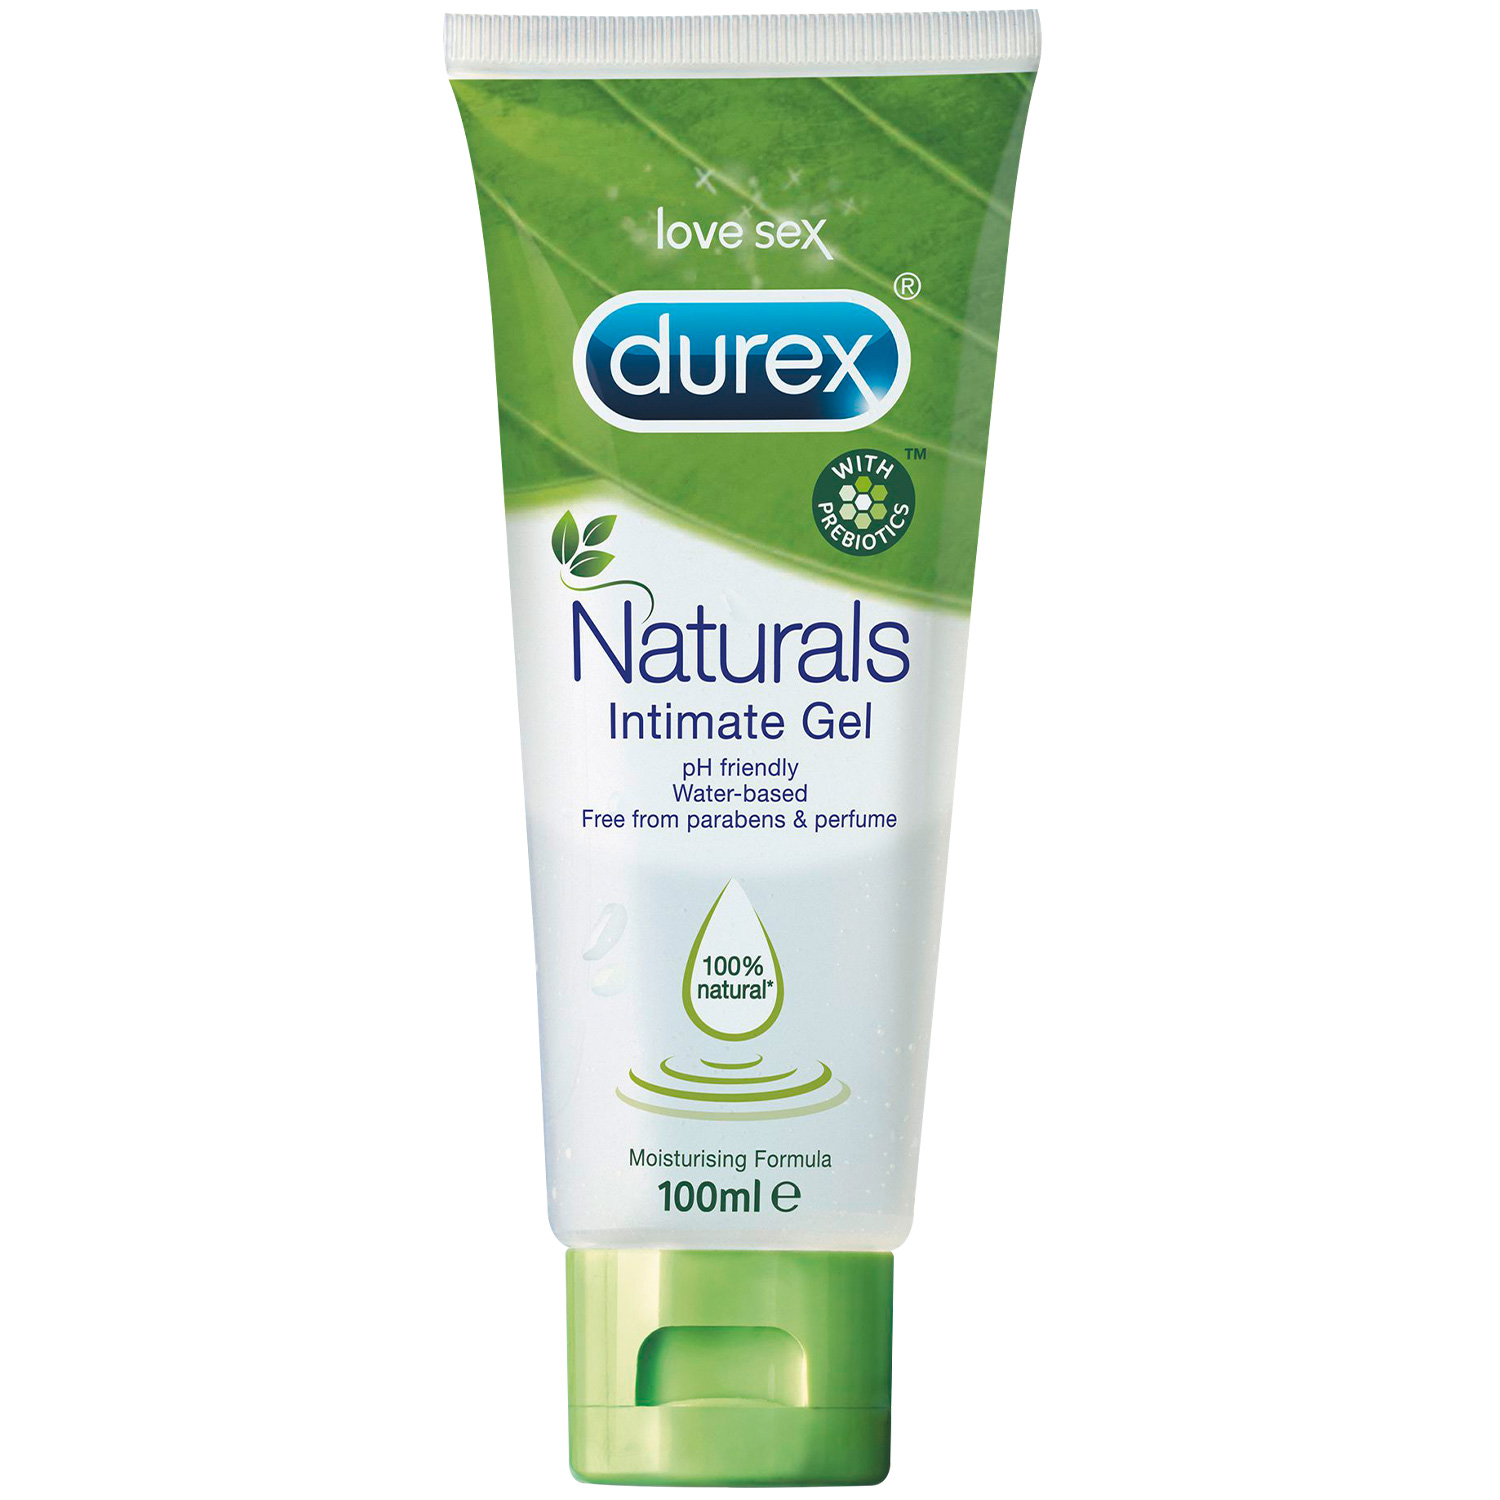 Durex Naturals Intimate Gel 100 ml - Clear